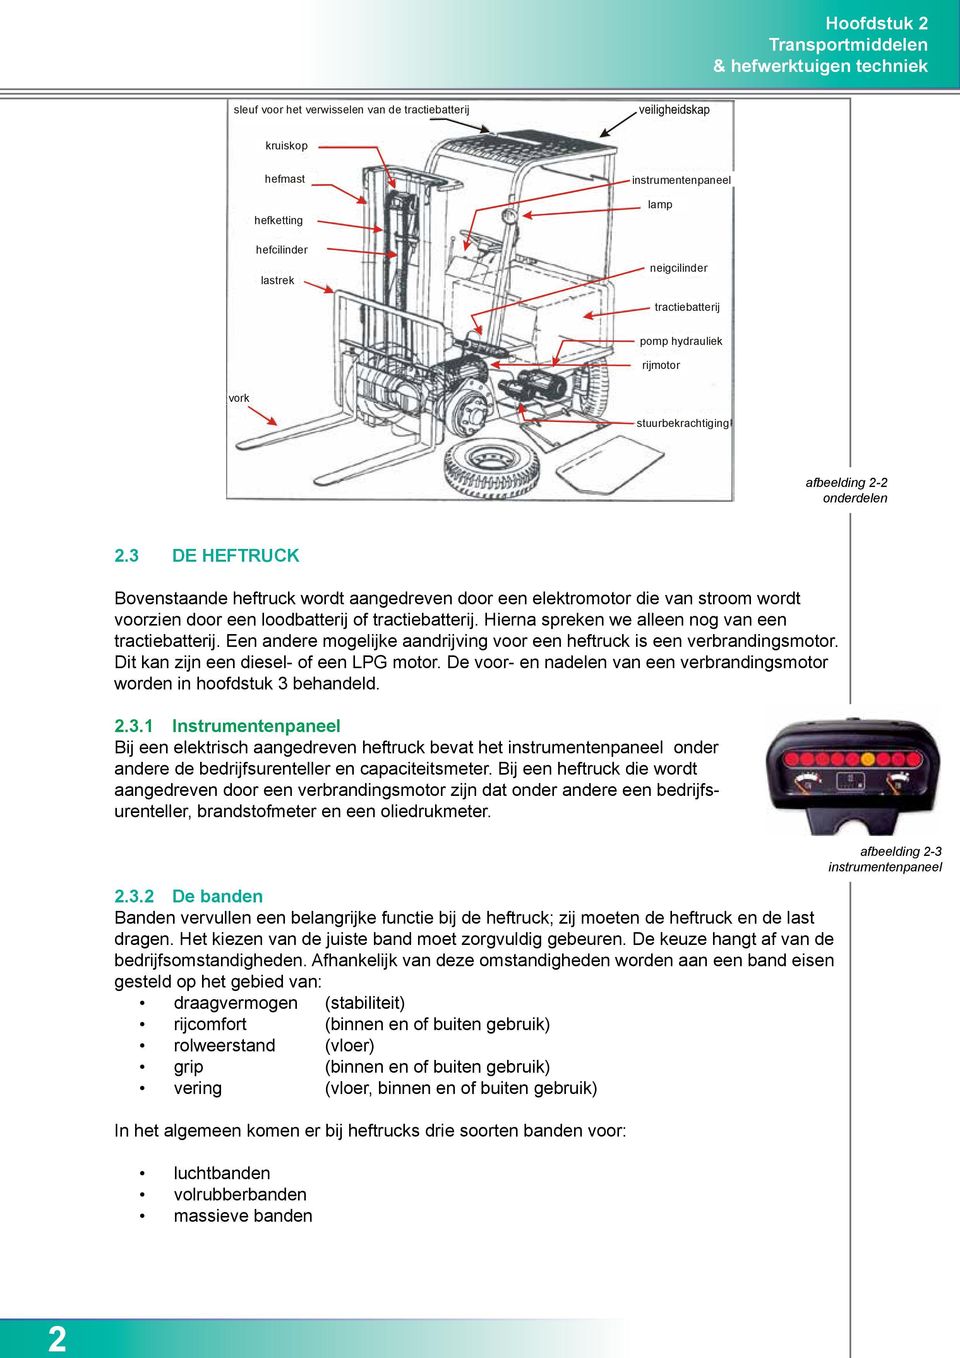 3 DE HEFTRUCK Bovenstaande heftruck wordt aangedreven door een elektromotor die van stroom wordt voorzien door een loodbatterij of tractiebatterij.